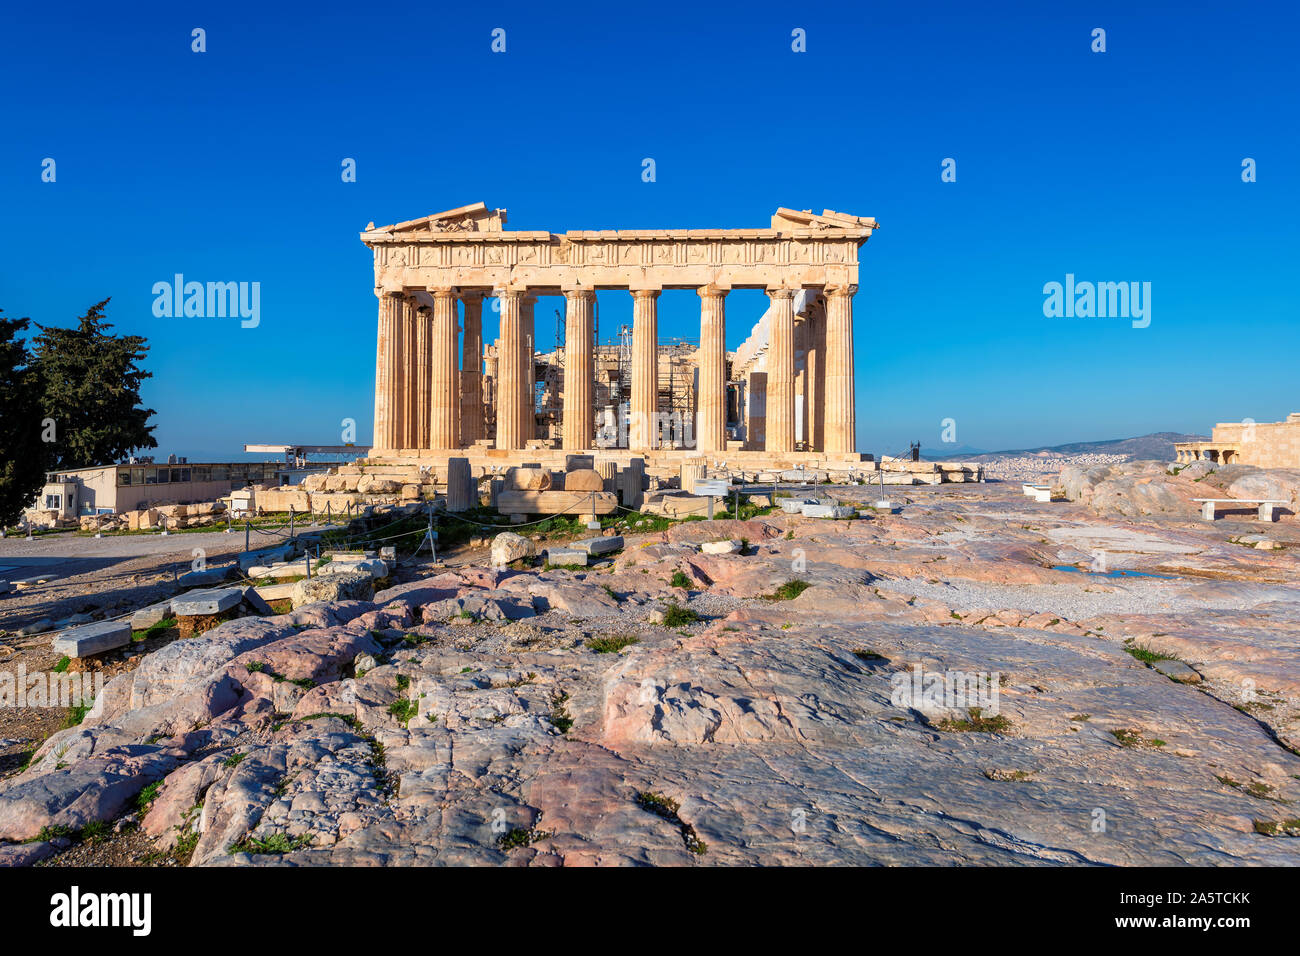 Parthenon temple in Acropolis, Athens, Greece. Stock Photo